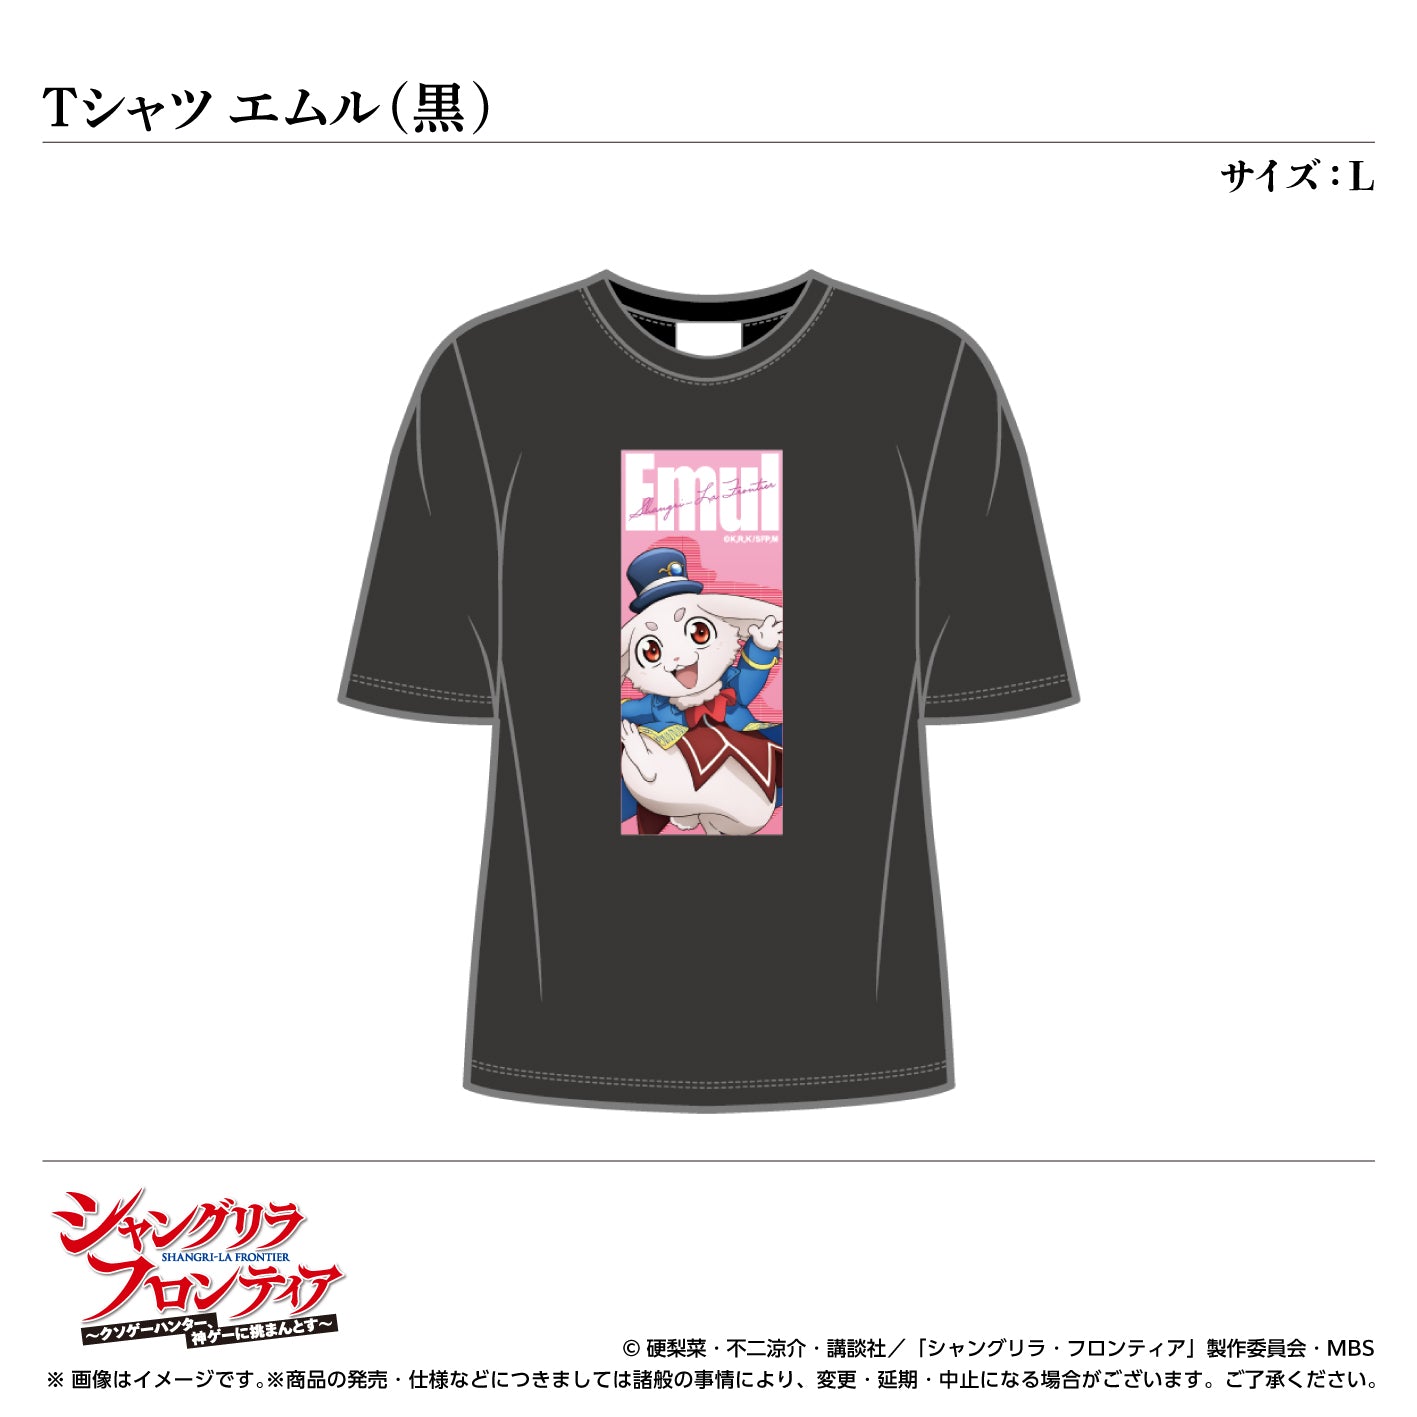 T -shirt / Emul (black) Size: L <TV anime "Shangri -La Frontier">